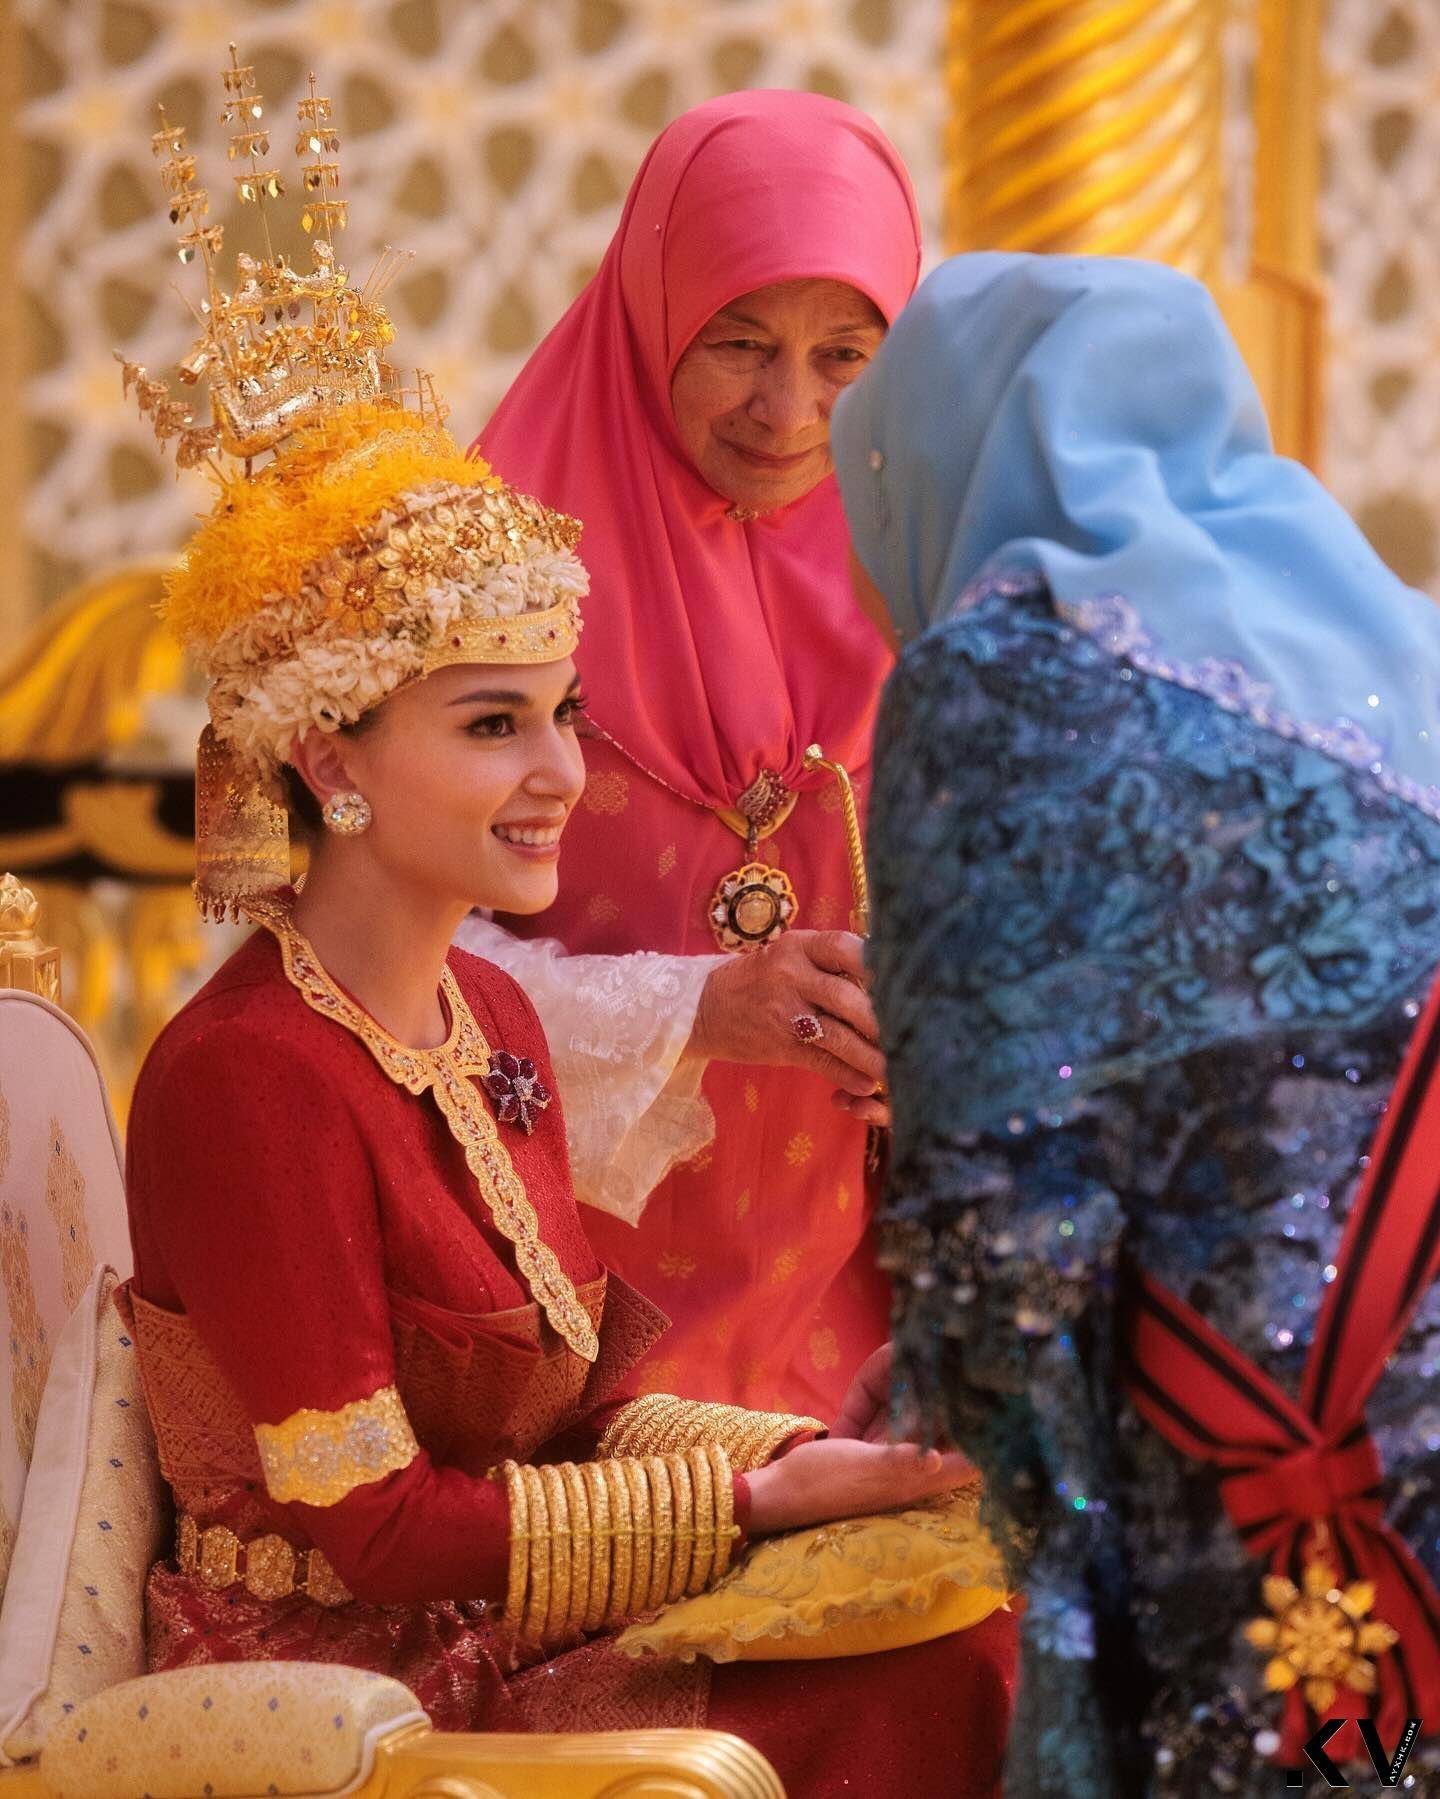 汶莱“亚洲最帅王子”世纪婚礼巨钻闪耀　出卖美娇娘吸奶瓶萌照 奢侈品牌 图5张